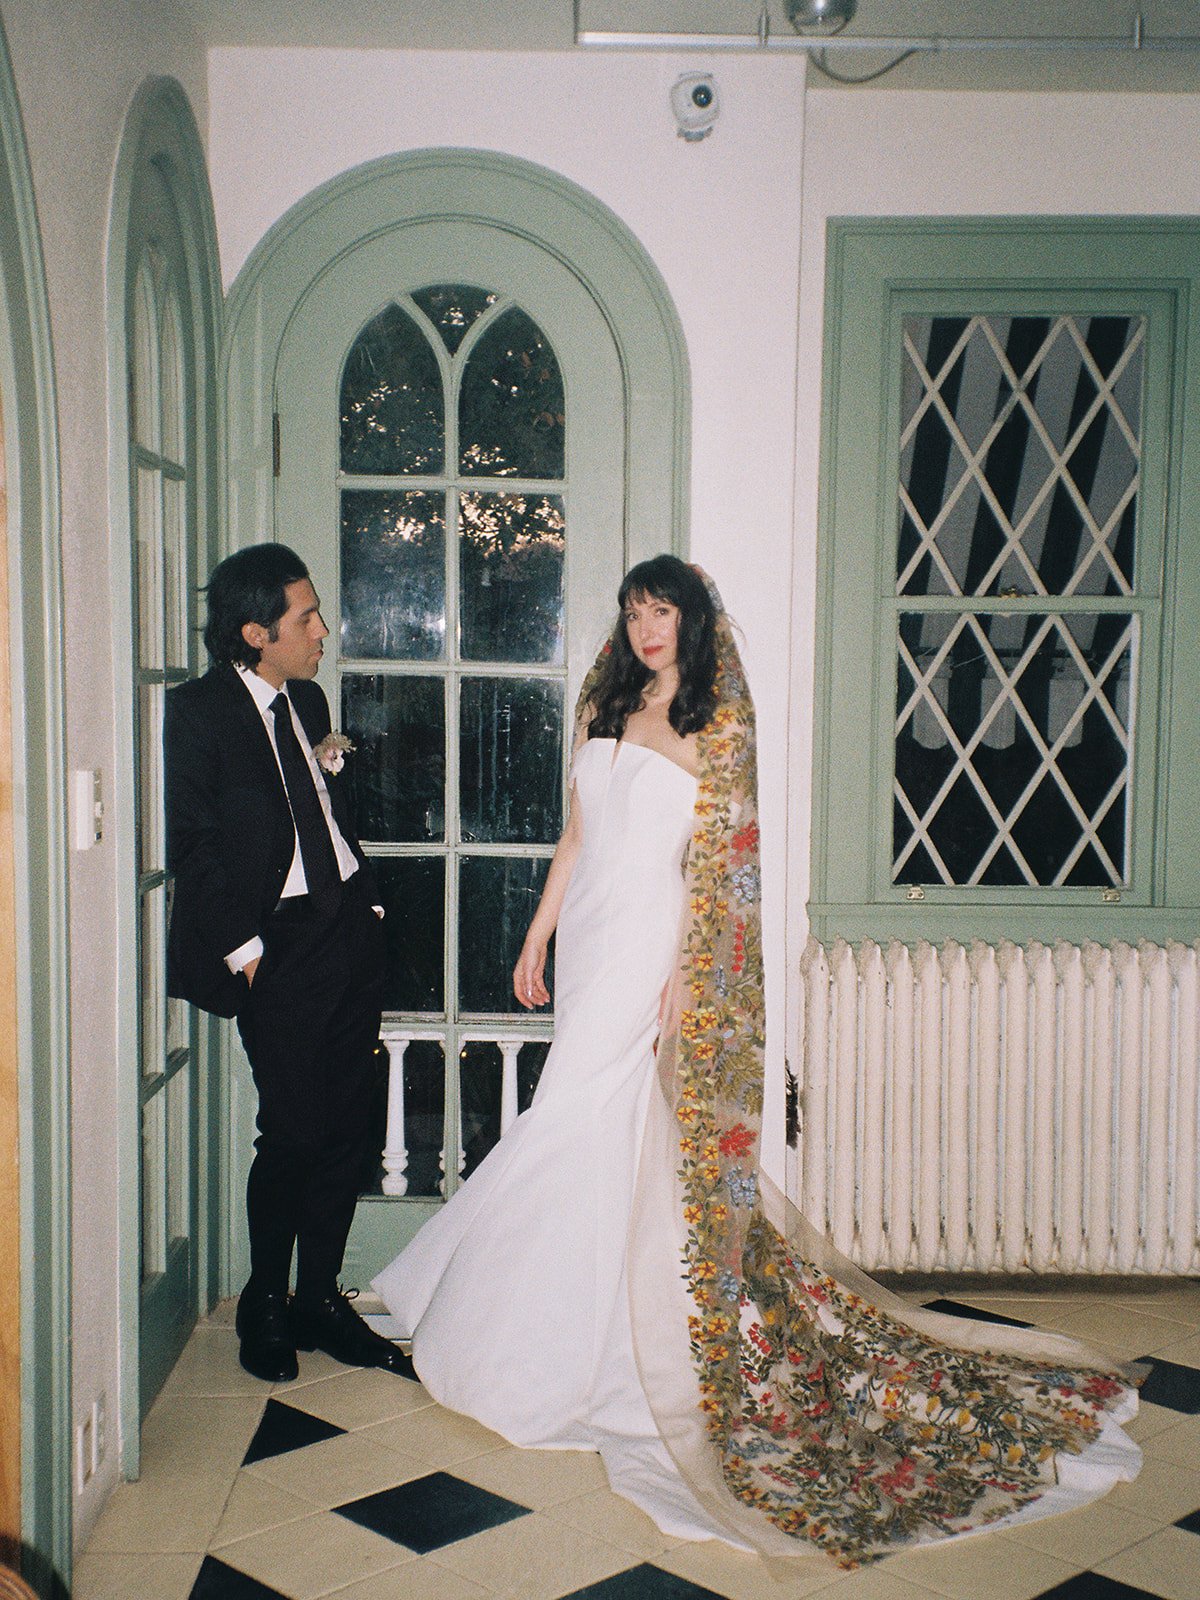 Best-Austin-Wedding-Photographers-Elopement-Film-35mm-Asheville-Santa-Barbara-Laguna-Gloria-83.jpg